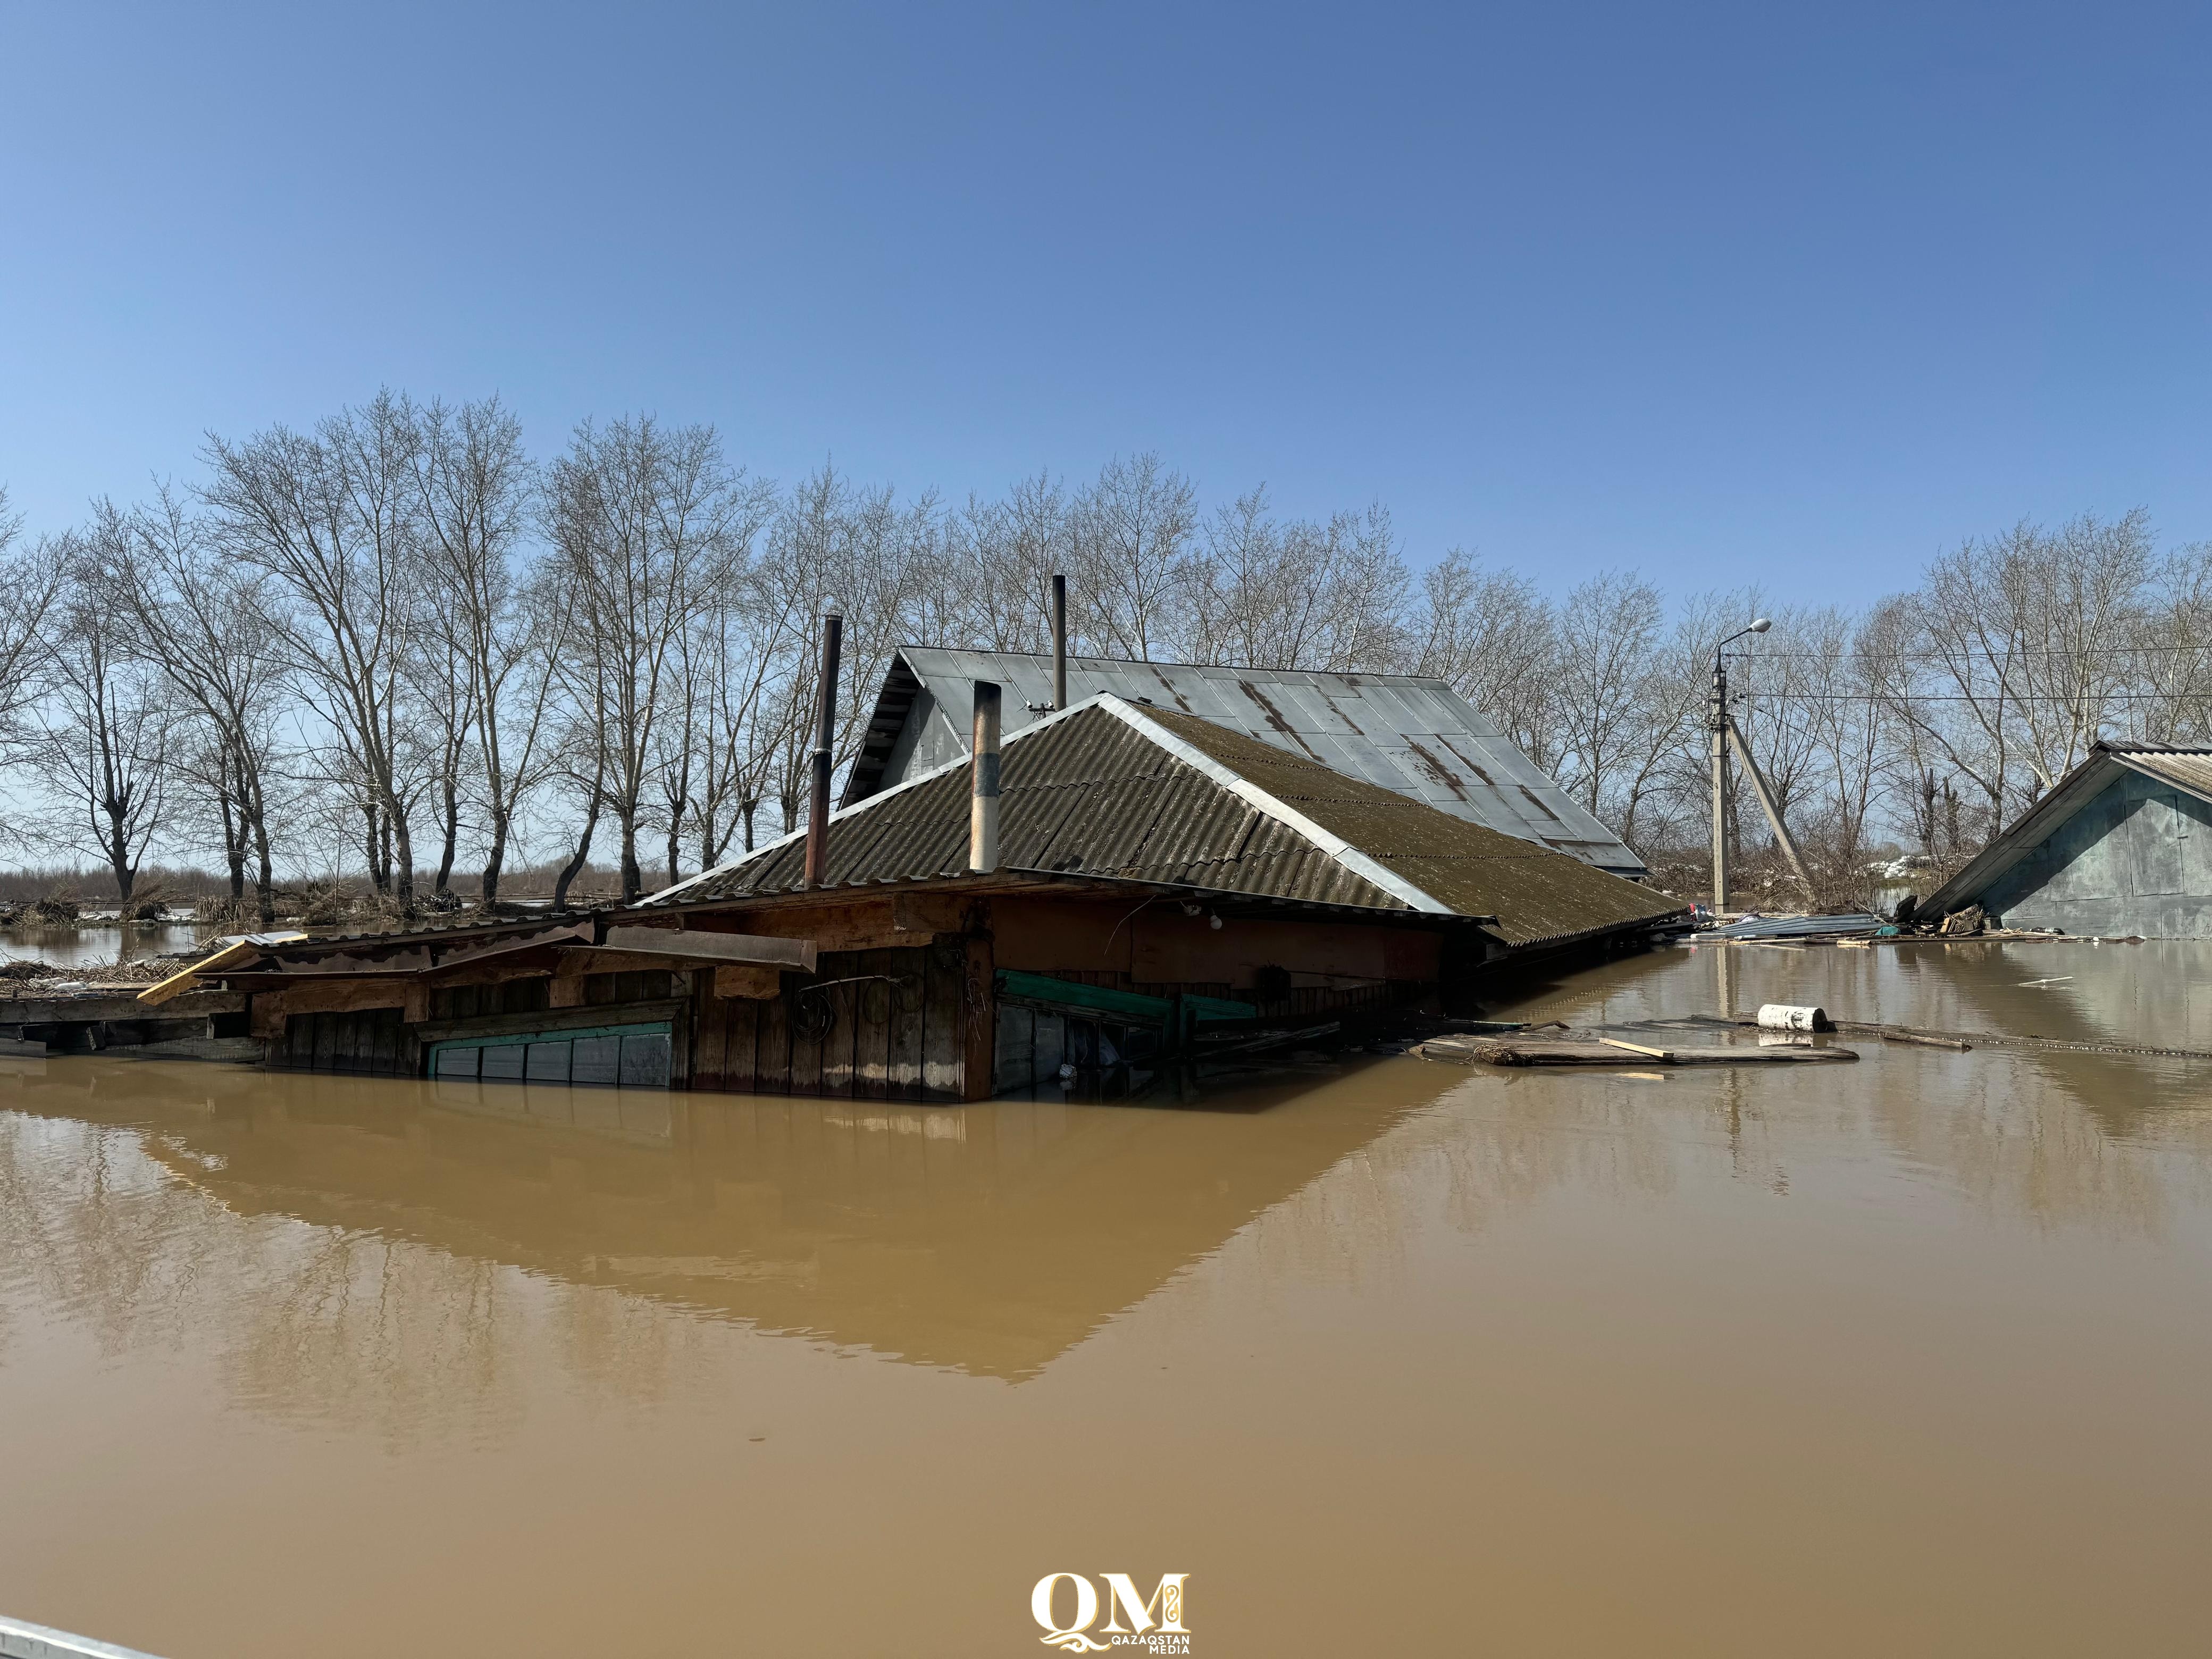 100 МРП, отпуск и гумпомощь получили энергетики пострадавшие от наводнения в СКО